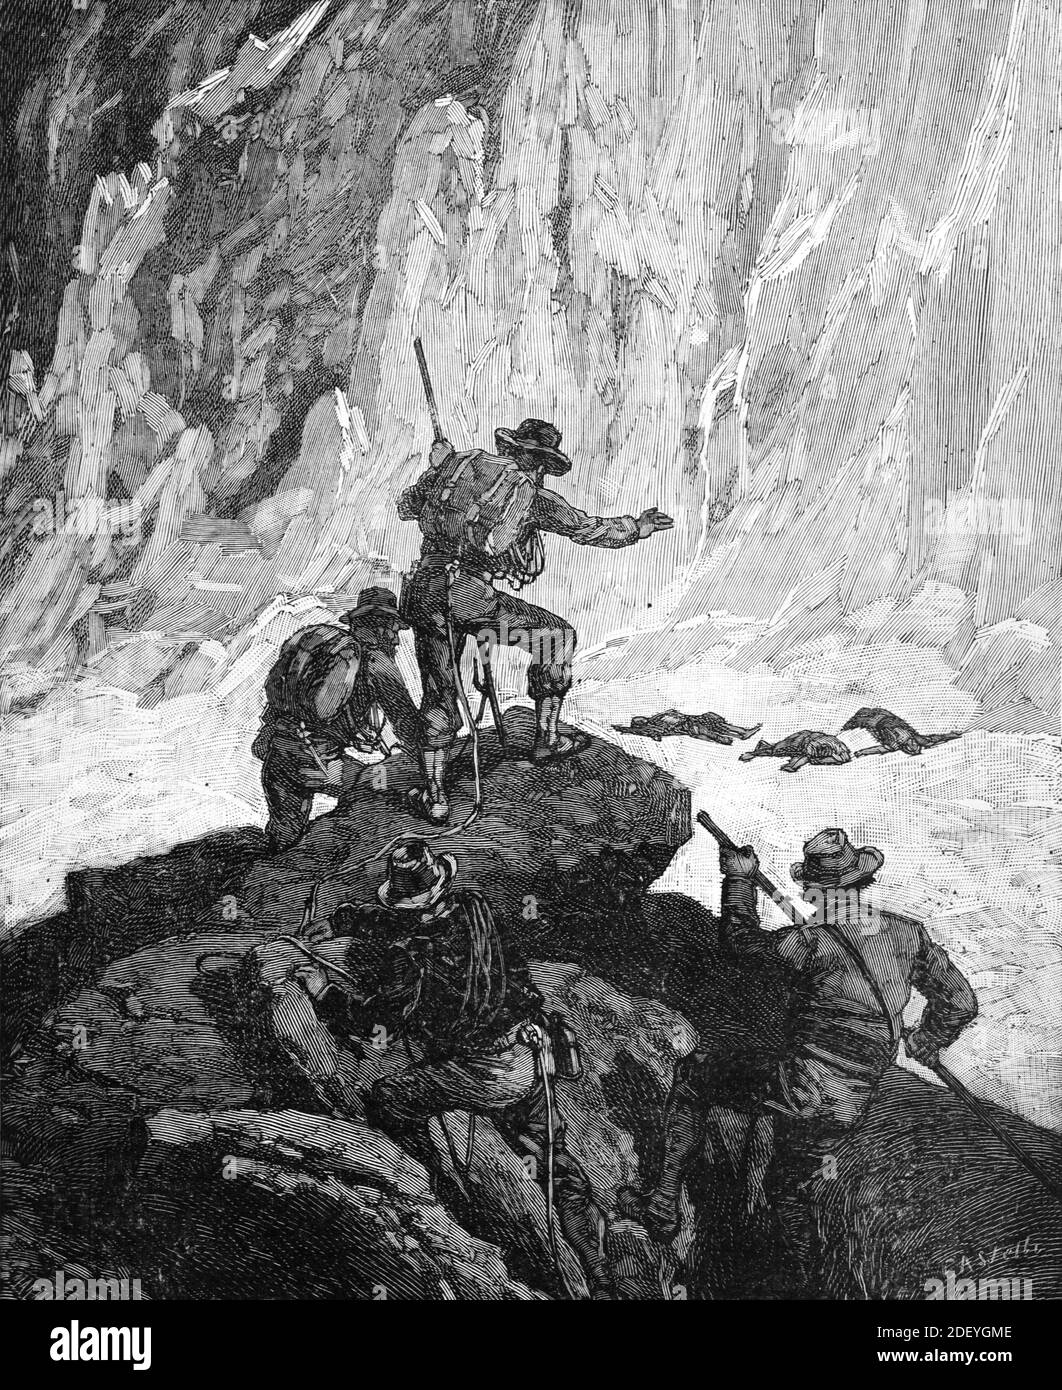 Tragedia o tragico incidente di montagna sul Cervino. La spedizione Edward Whymper nelle Alpi svizzere 1865 (engr Castelli 1884) Illustrazione o incisione d'epoca Foto Stock